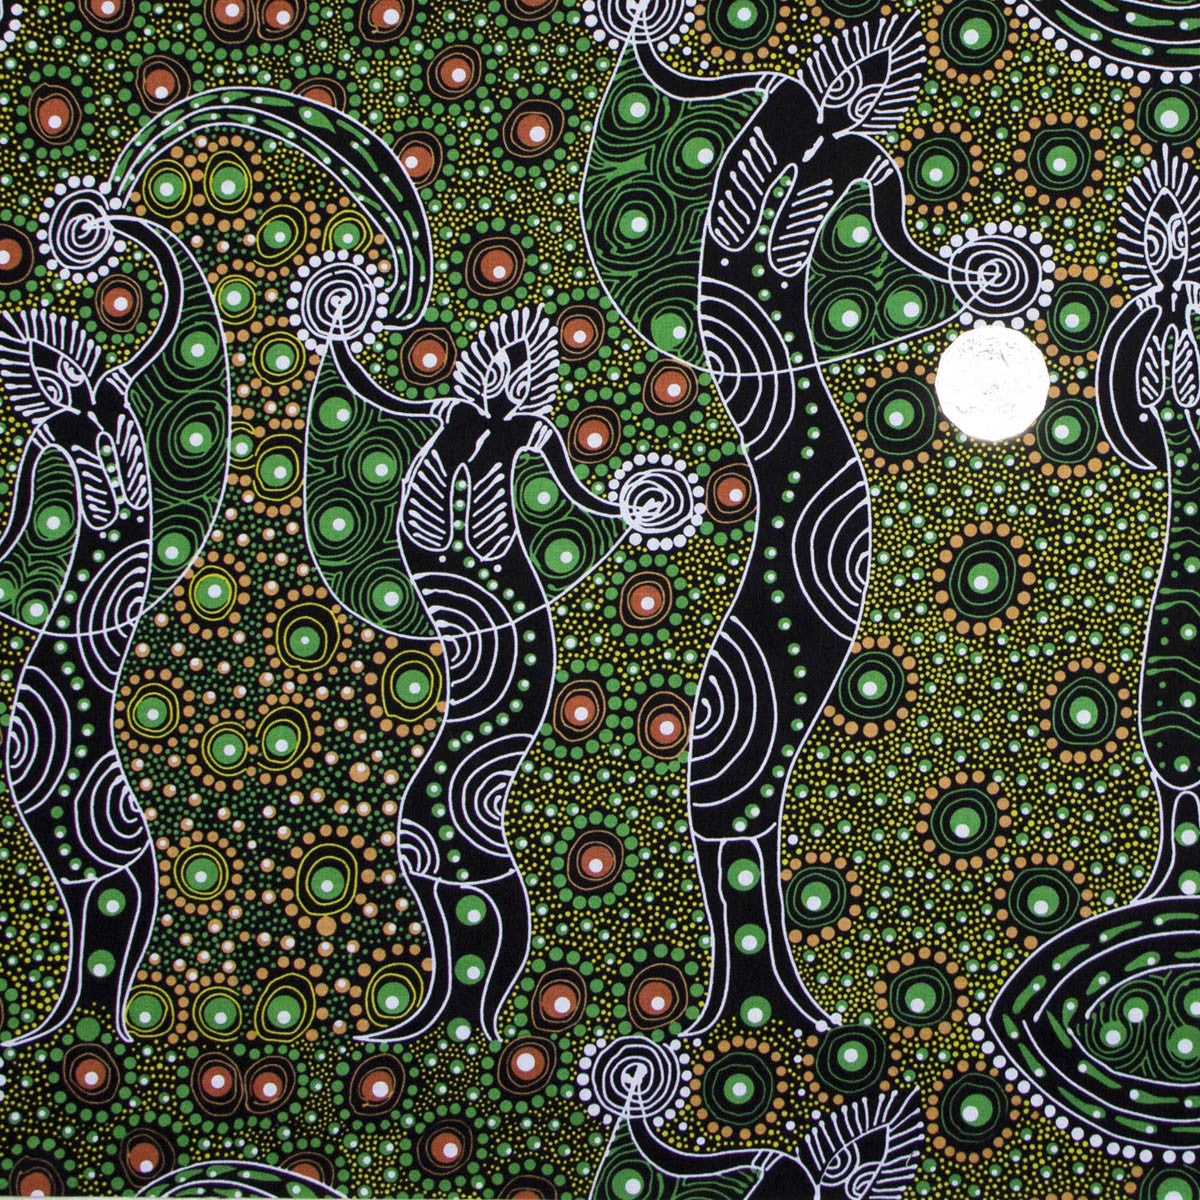 DANCING SPIRIT GREEN by Australian Aboriginal Artist COLLEEN WALLACE